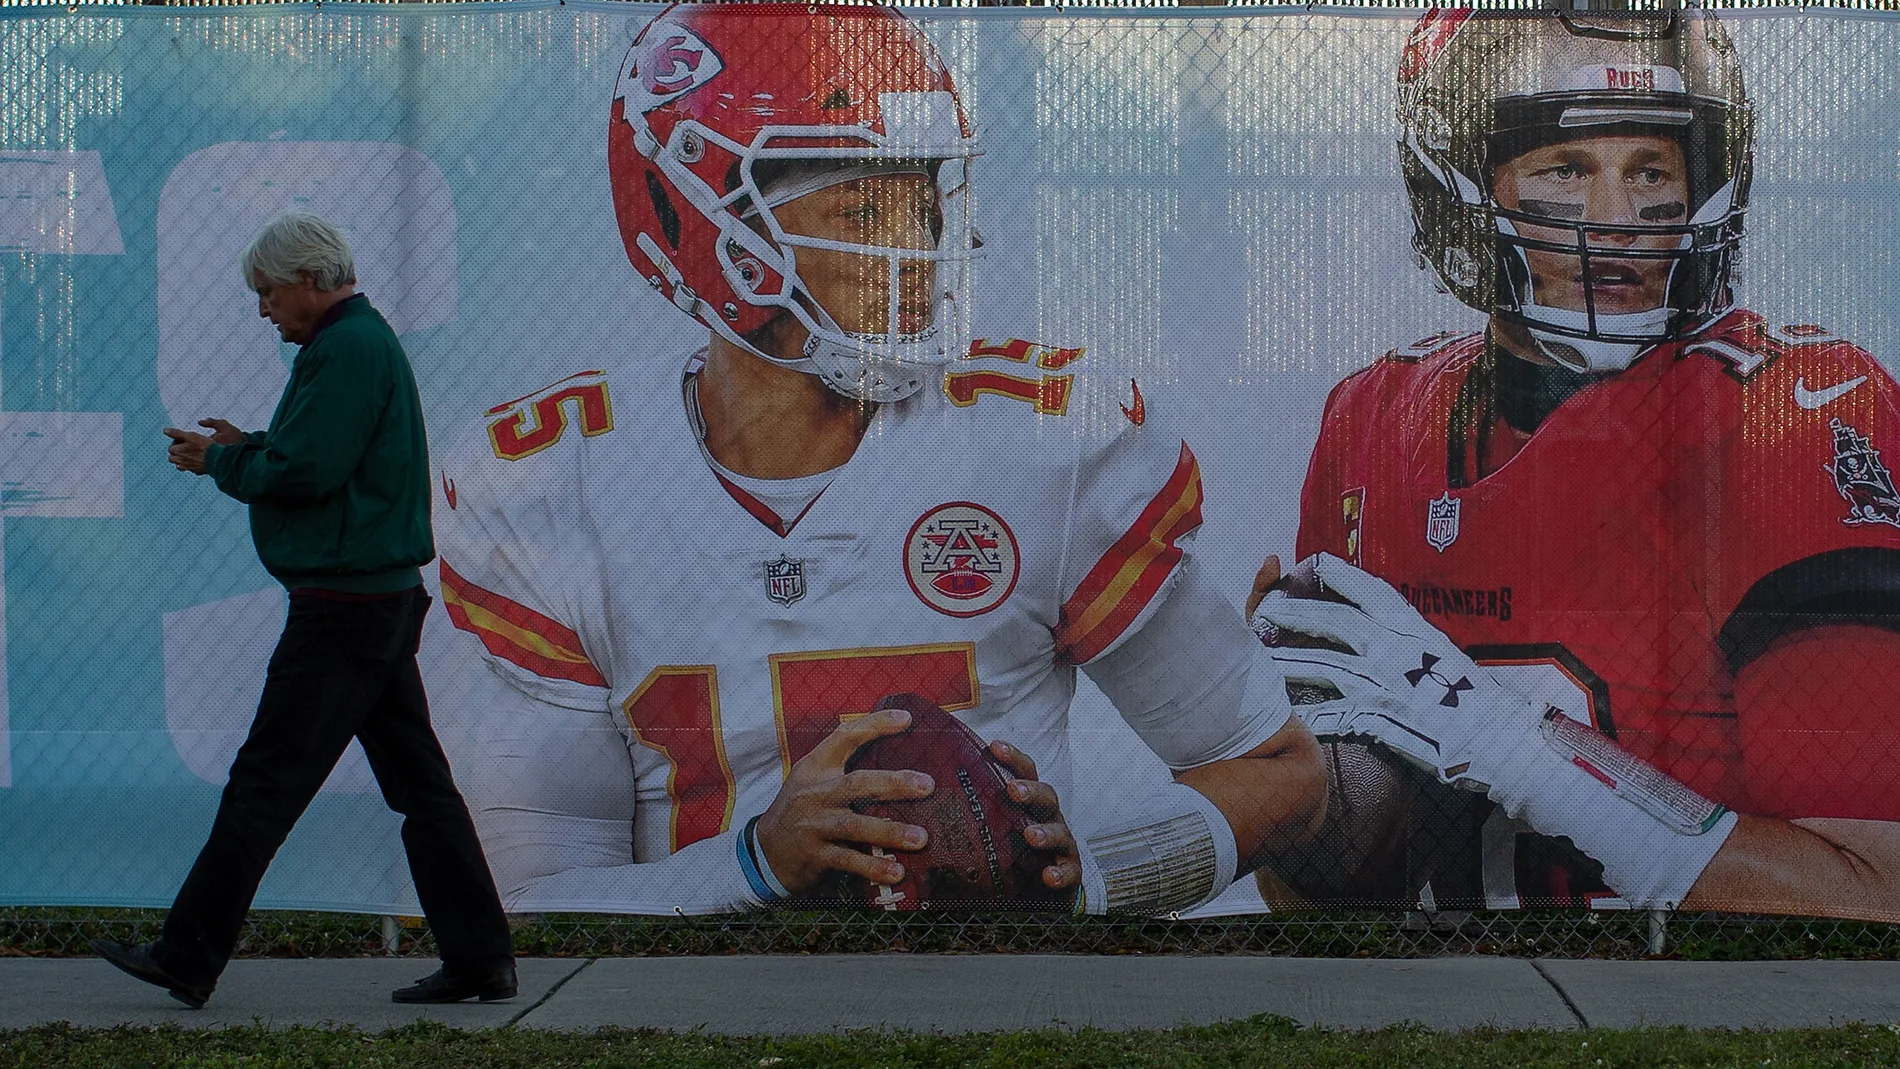 Un cartel en las calles de Tampa anuncia el duelo estelar de la Super Bowl entre Patrick Mahomes y Tom Brady, es decir, entre Kansas City Chiefs y Tampa Bay Buccaneers